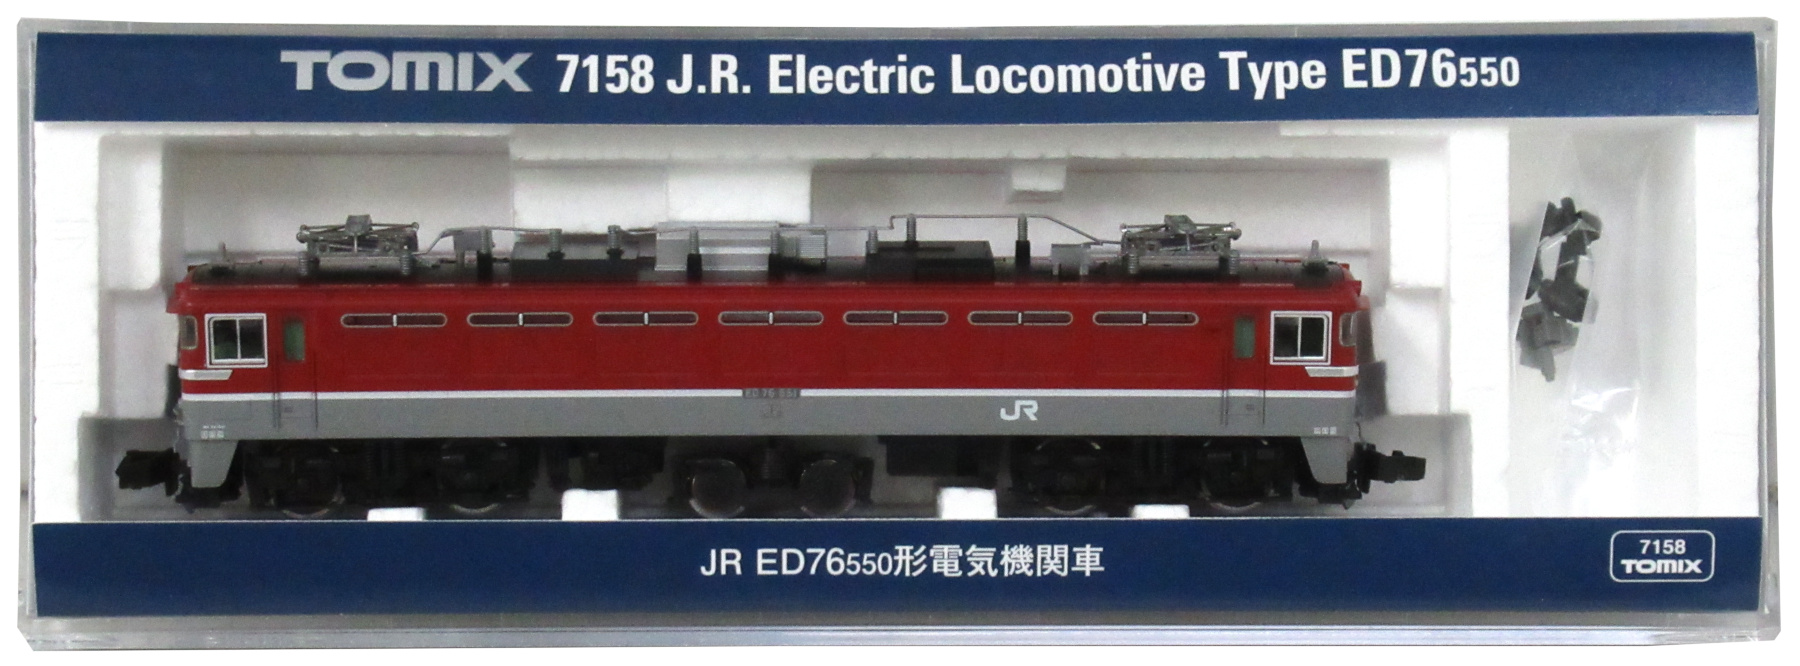 公式]鉄道模型(JR・国鉄 形式別(N)、電気機関車、ED76)カテゴリ 